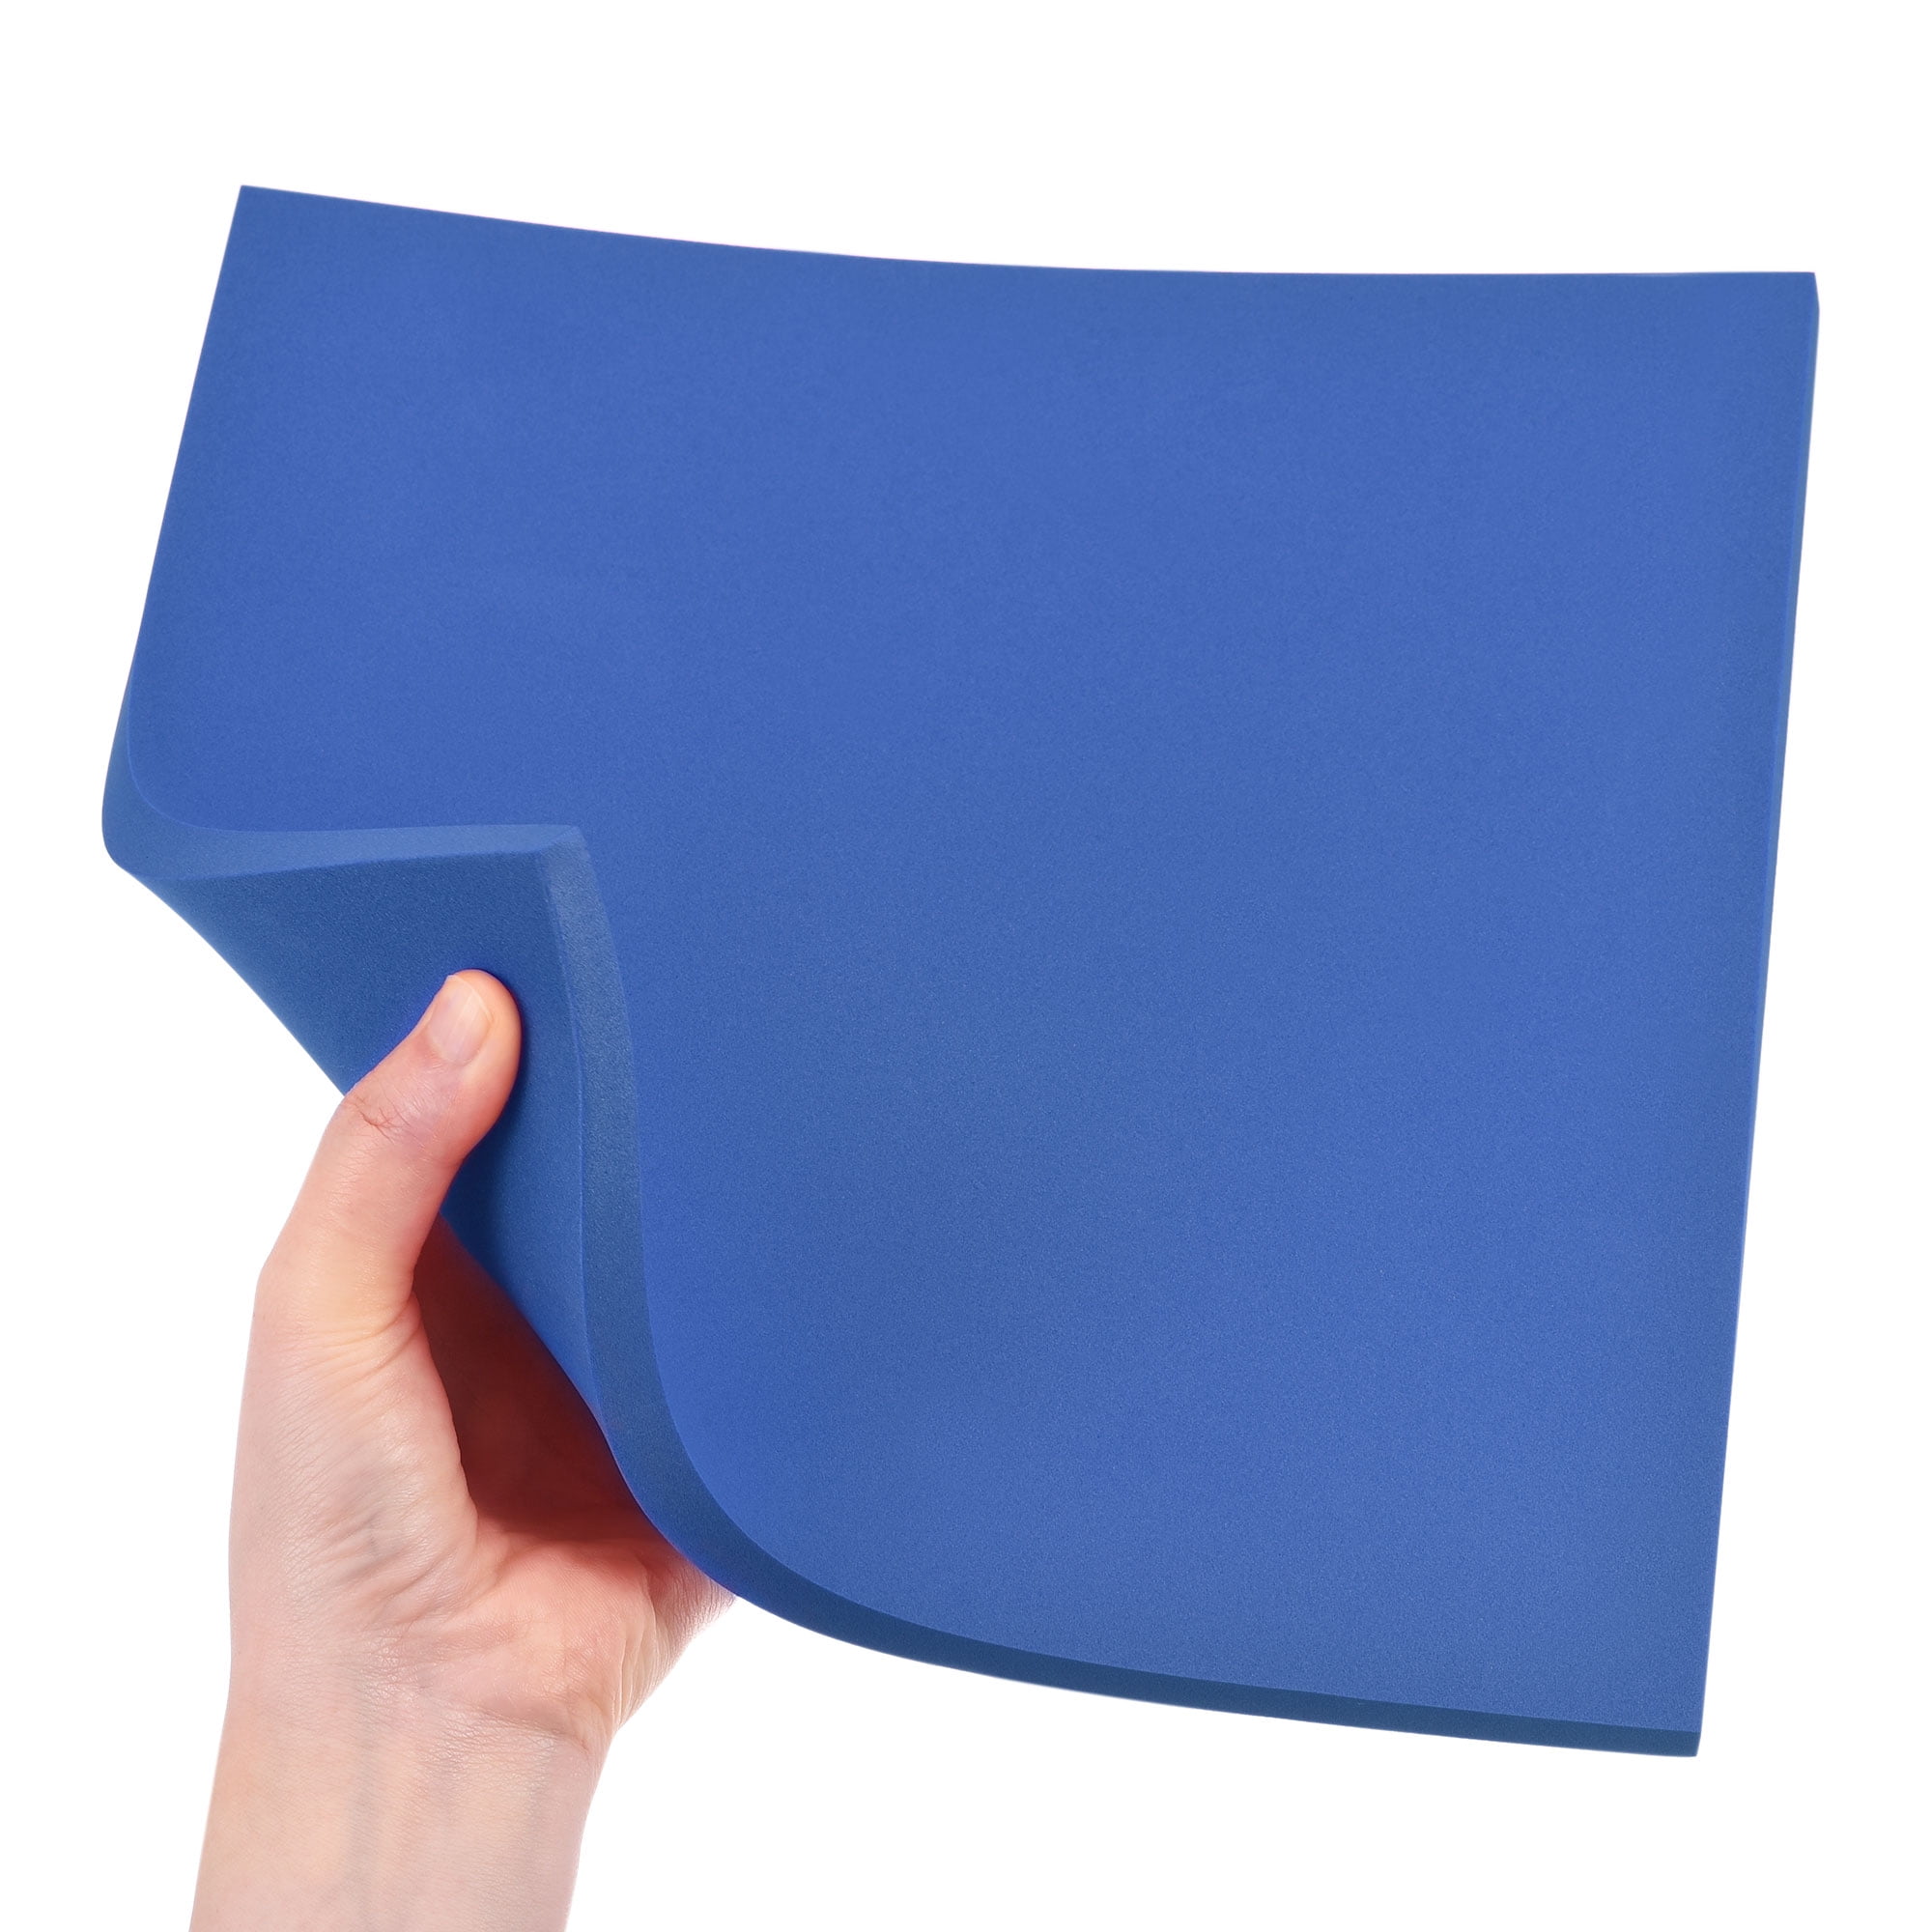 Uxcell 6x8 150x200mm Foam Sheet for Crafts Foam Boards Foam Paper Sheets  for Art, Blue 5 Pack